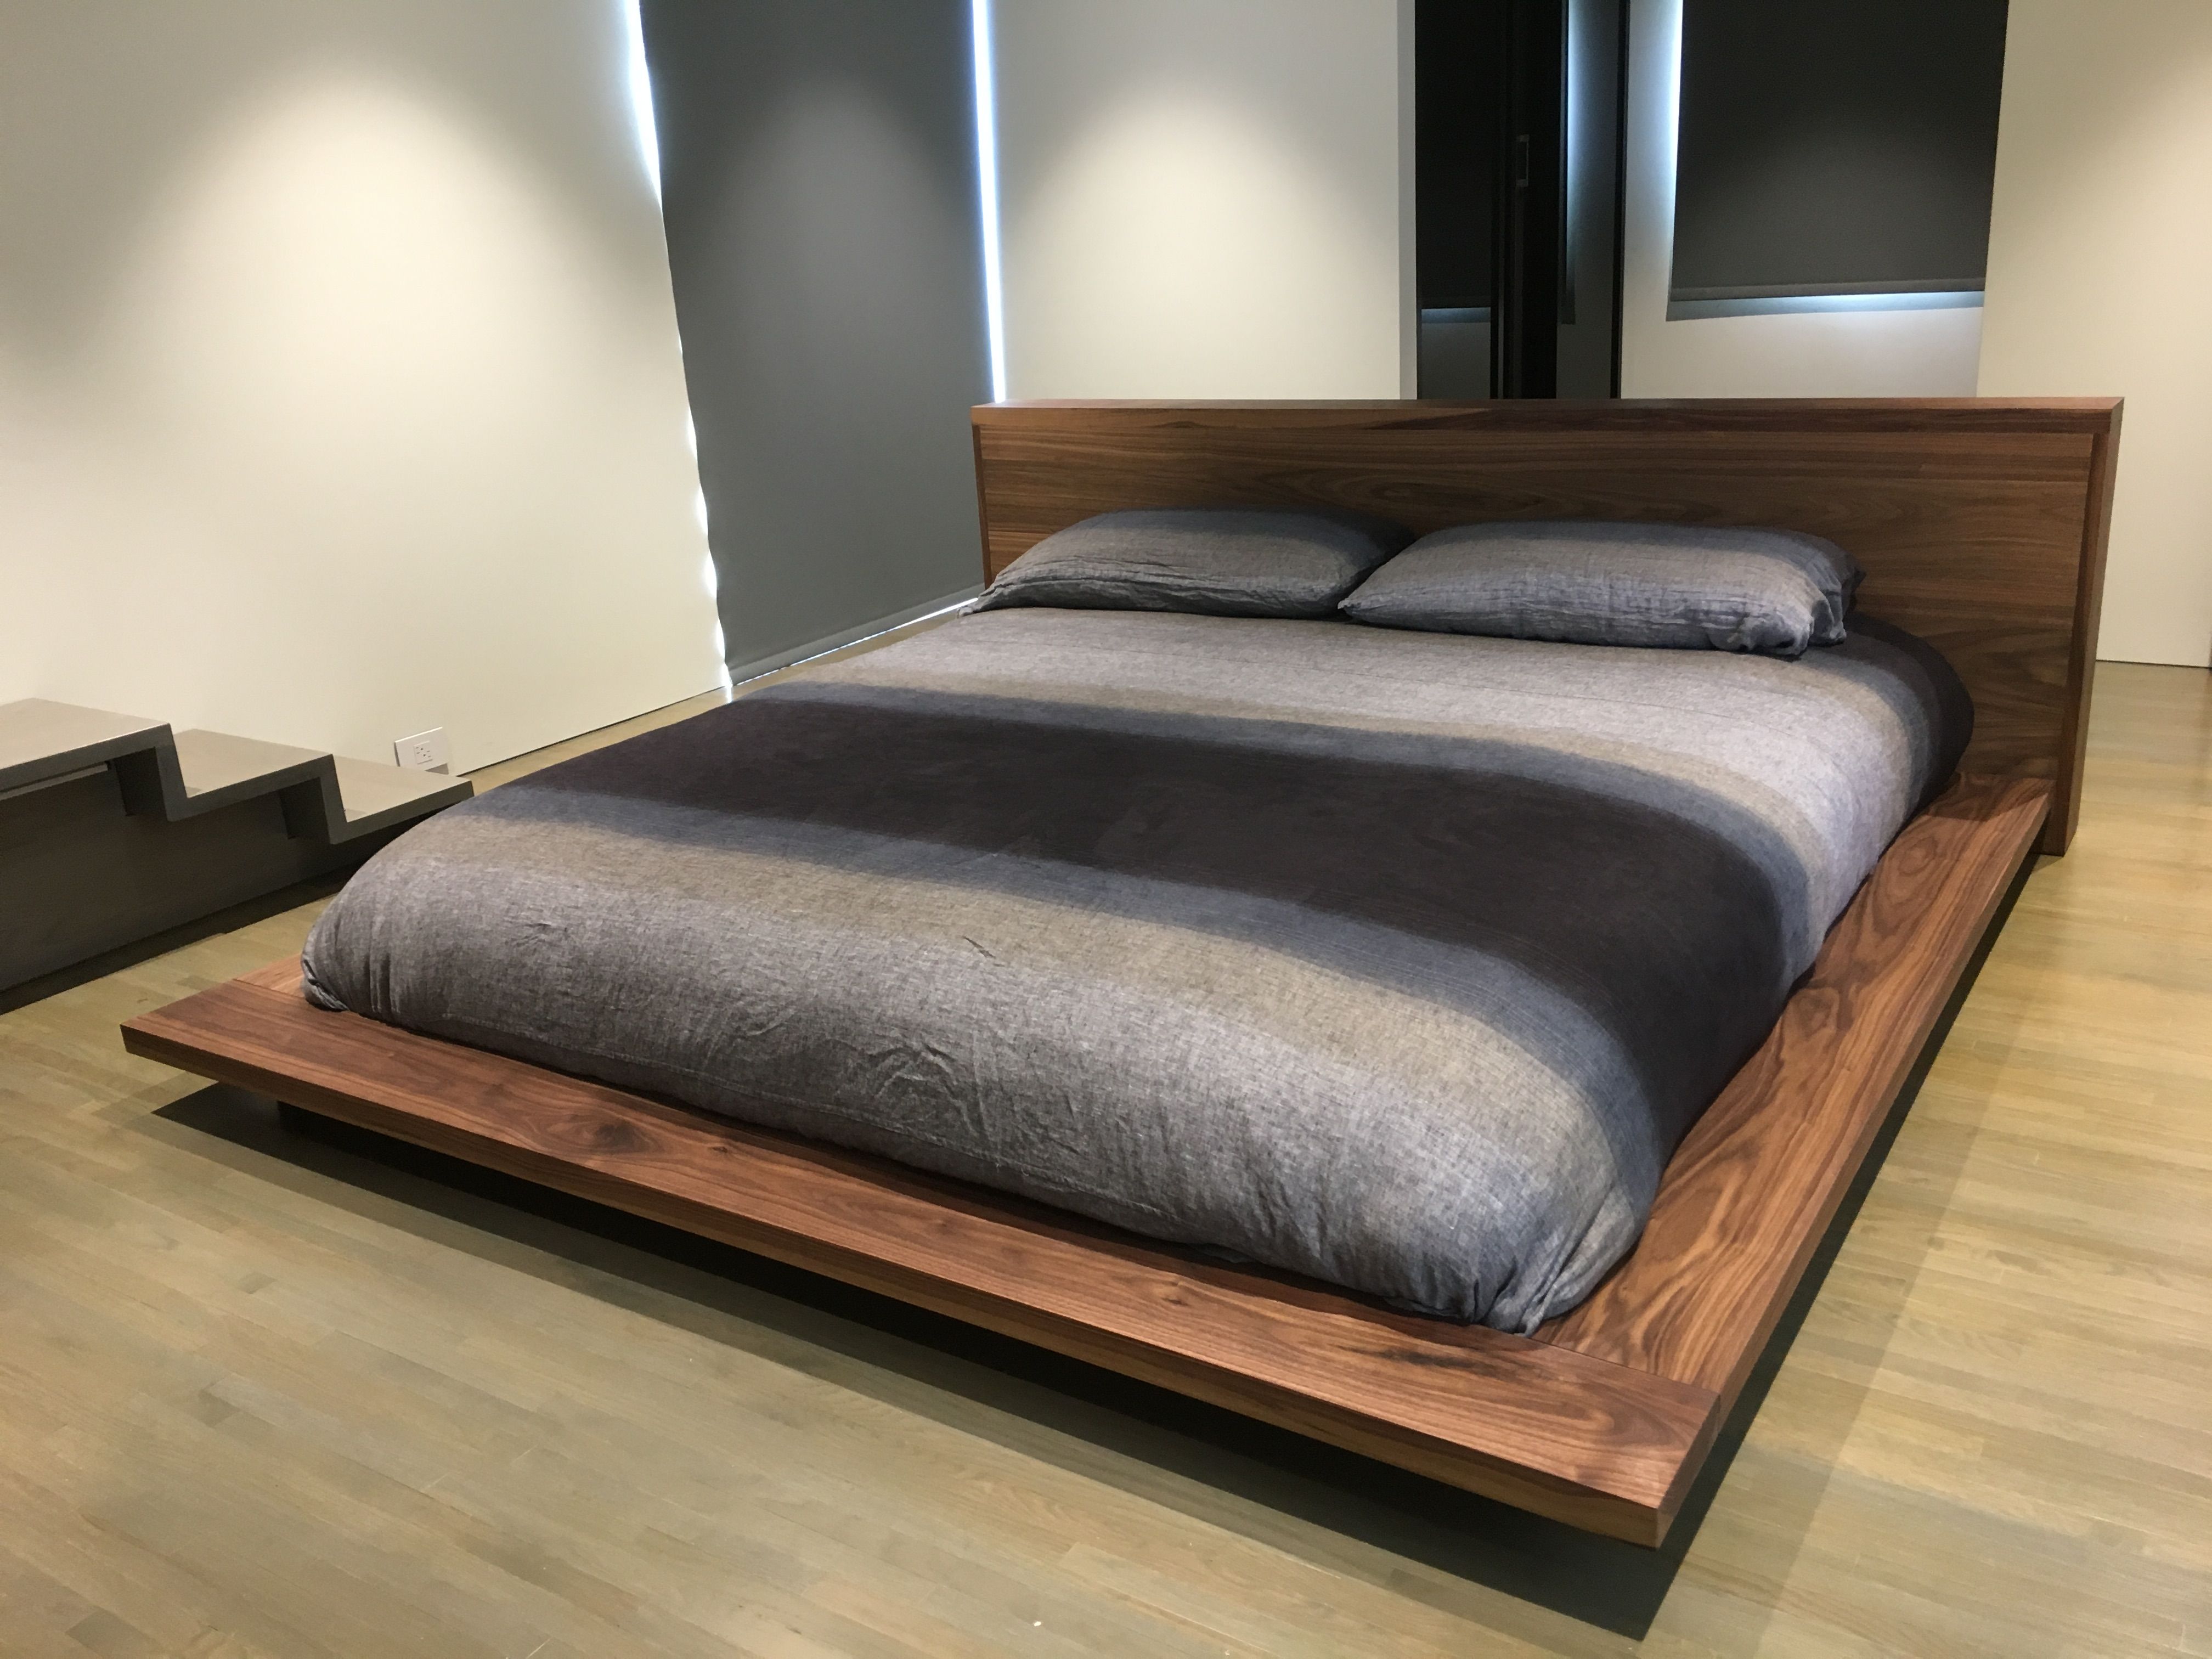 mattress for a platform bed